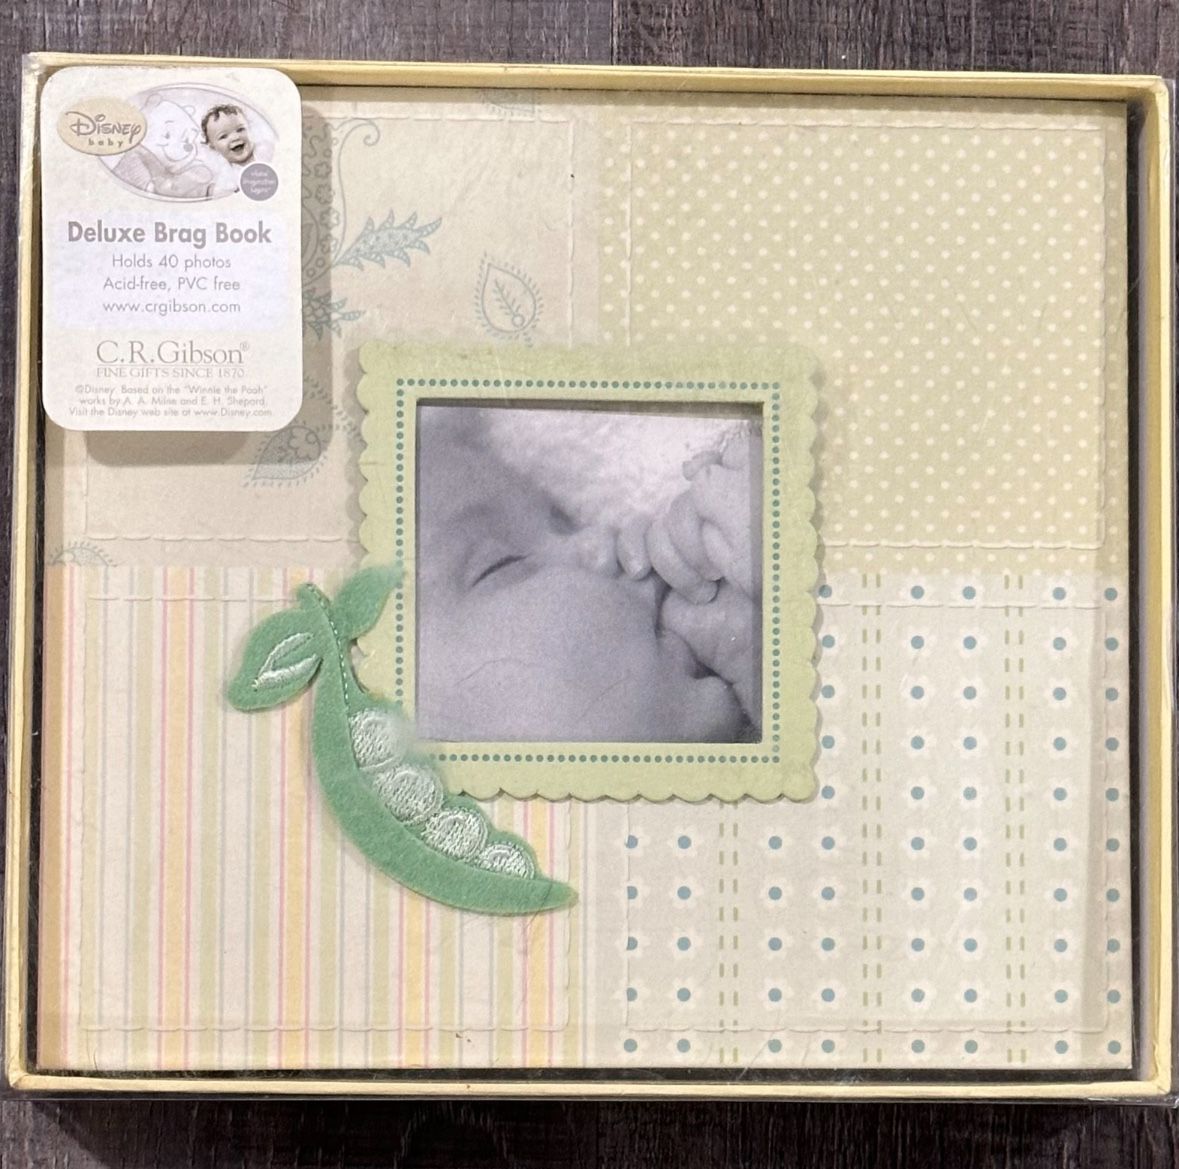 New Disney Baby “Sweet Pea” Deluxe Brag Book Photo Album